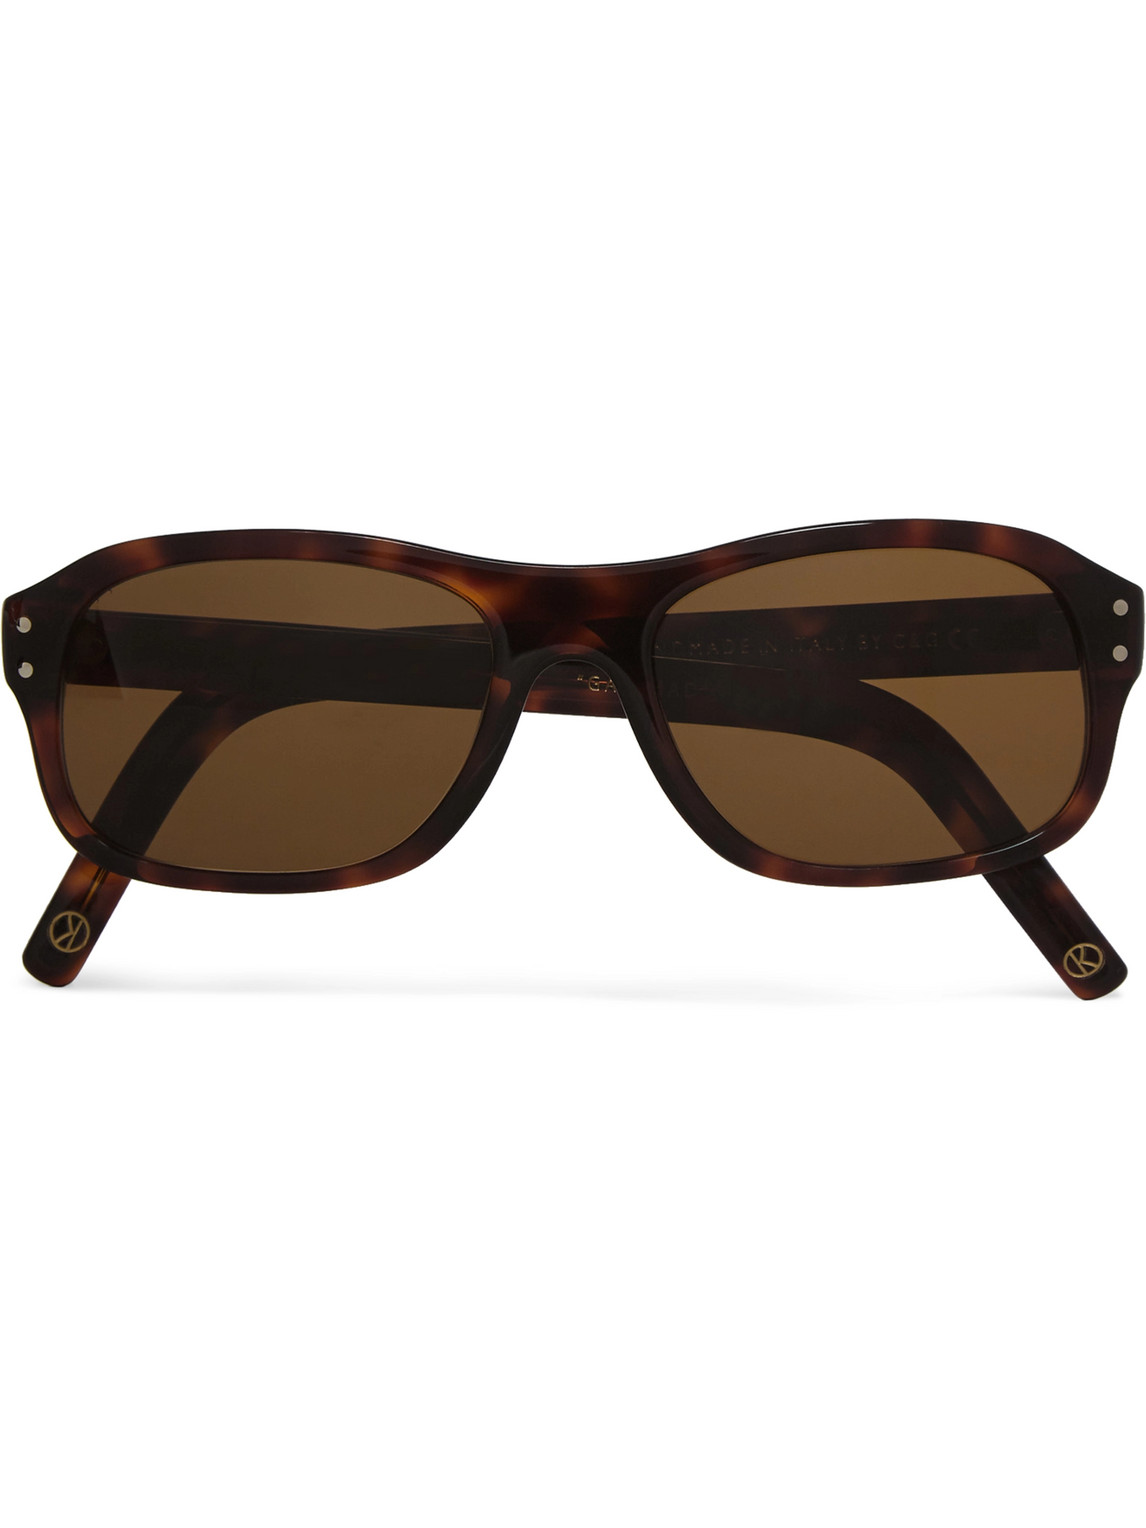 Kingsman Cutler And Gross Square-frame Tortoiseshell Acetate Sunglasses